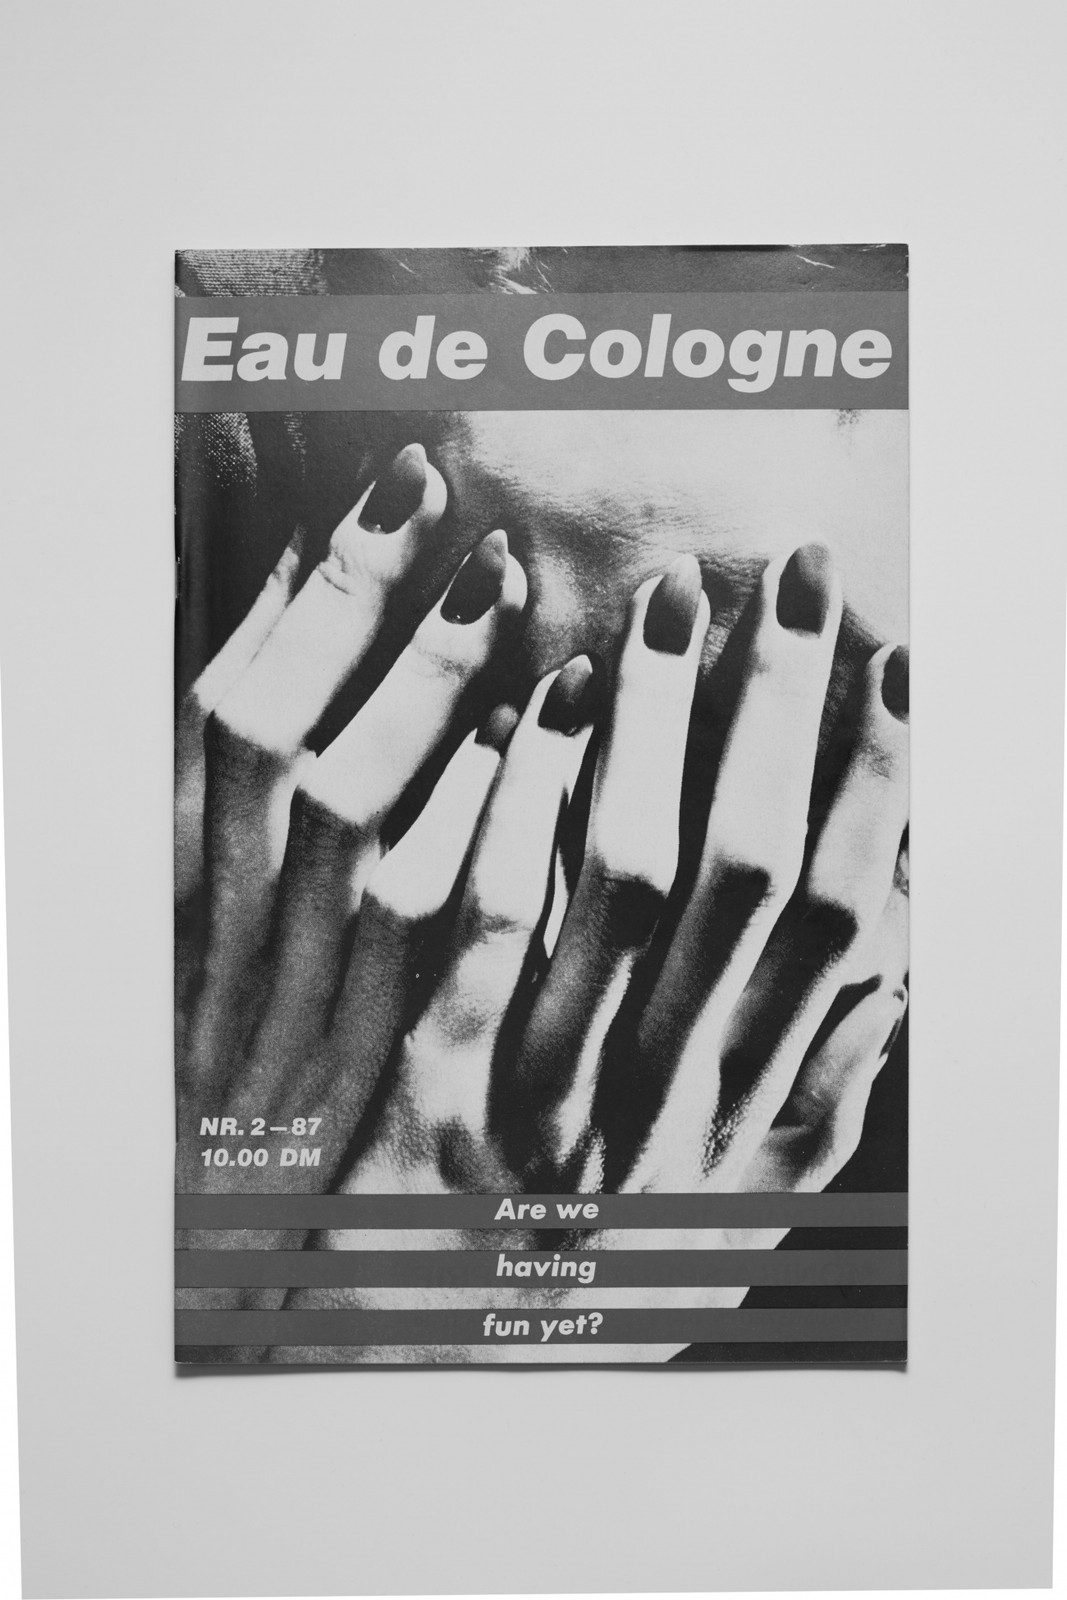 Работа Барбары Крюгер на&nbsp;обложка второго выпуска журнала “Eau De Cologne” (1987)